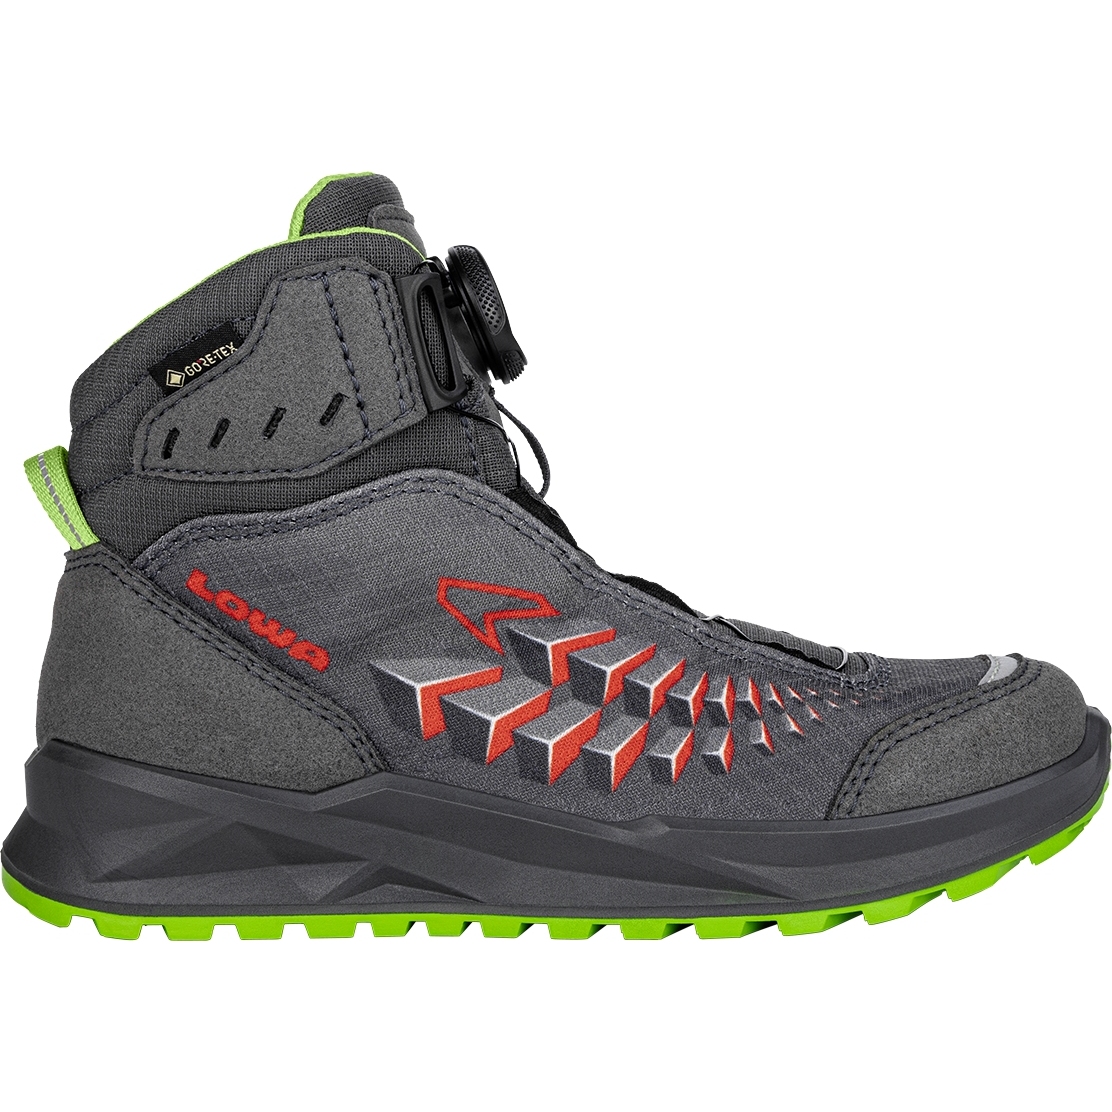 Produktbild von LOWA Ferrox GTX Mid Junior Schuhe Kinder - anthrazit/limone (Größe 30-35)